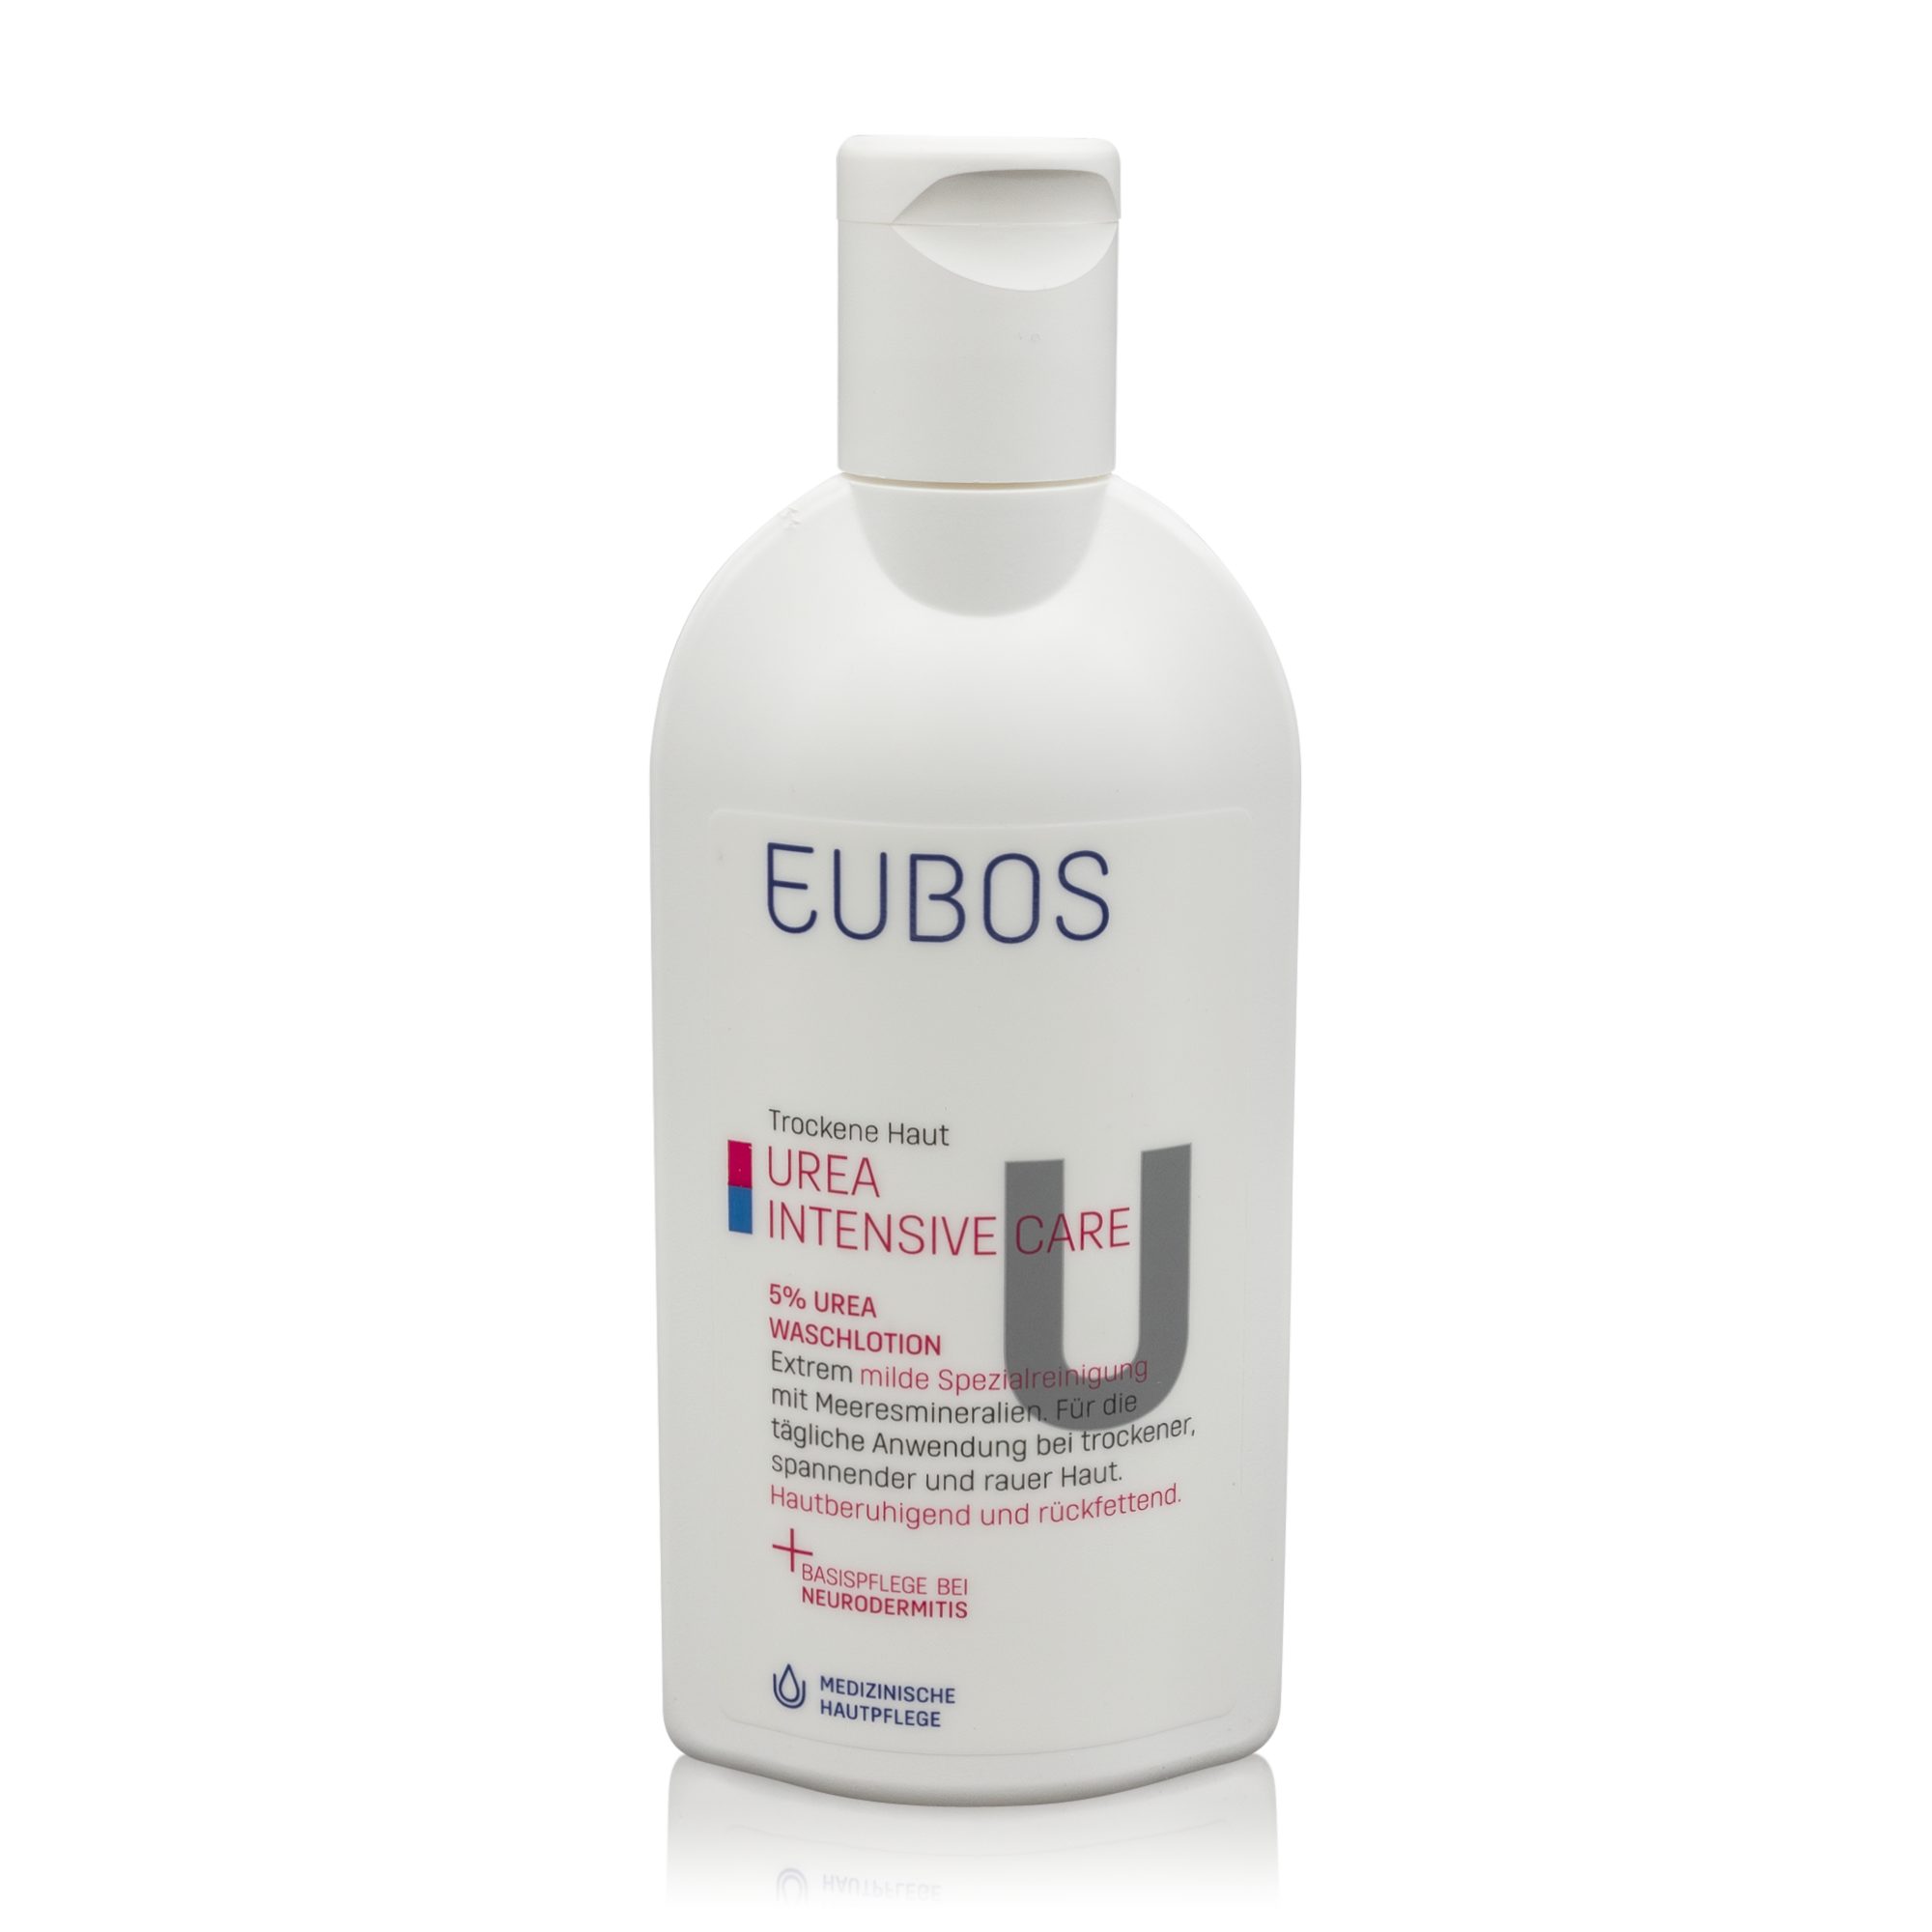 EUBOS Hautreinigungs-Set (200ml) Urea - Urea Eubos Waschlotion Intensive Haut Trockene 5% Care